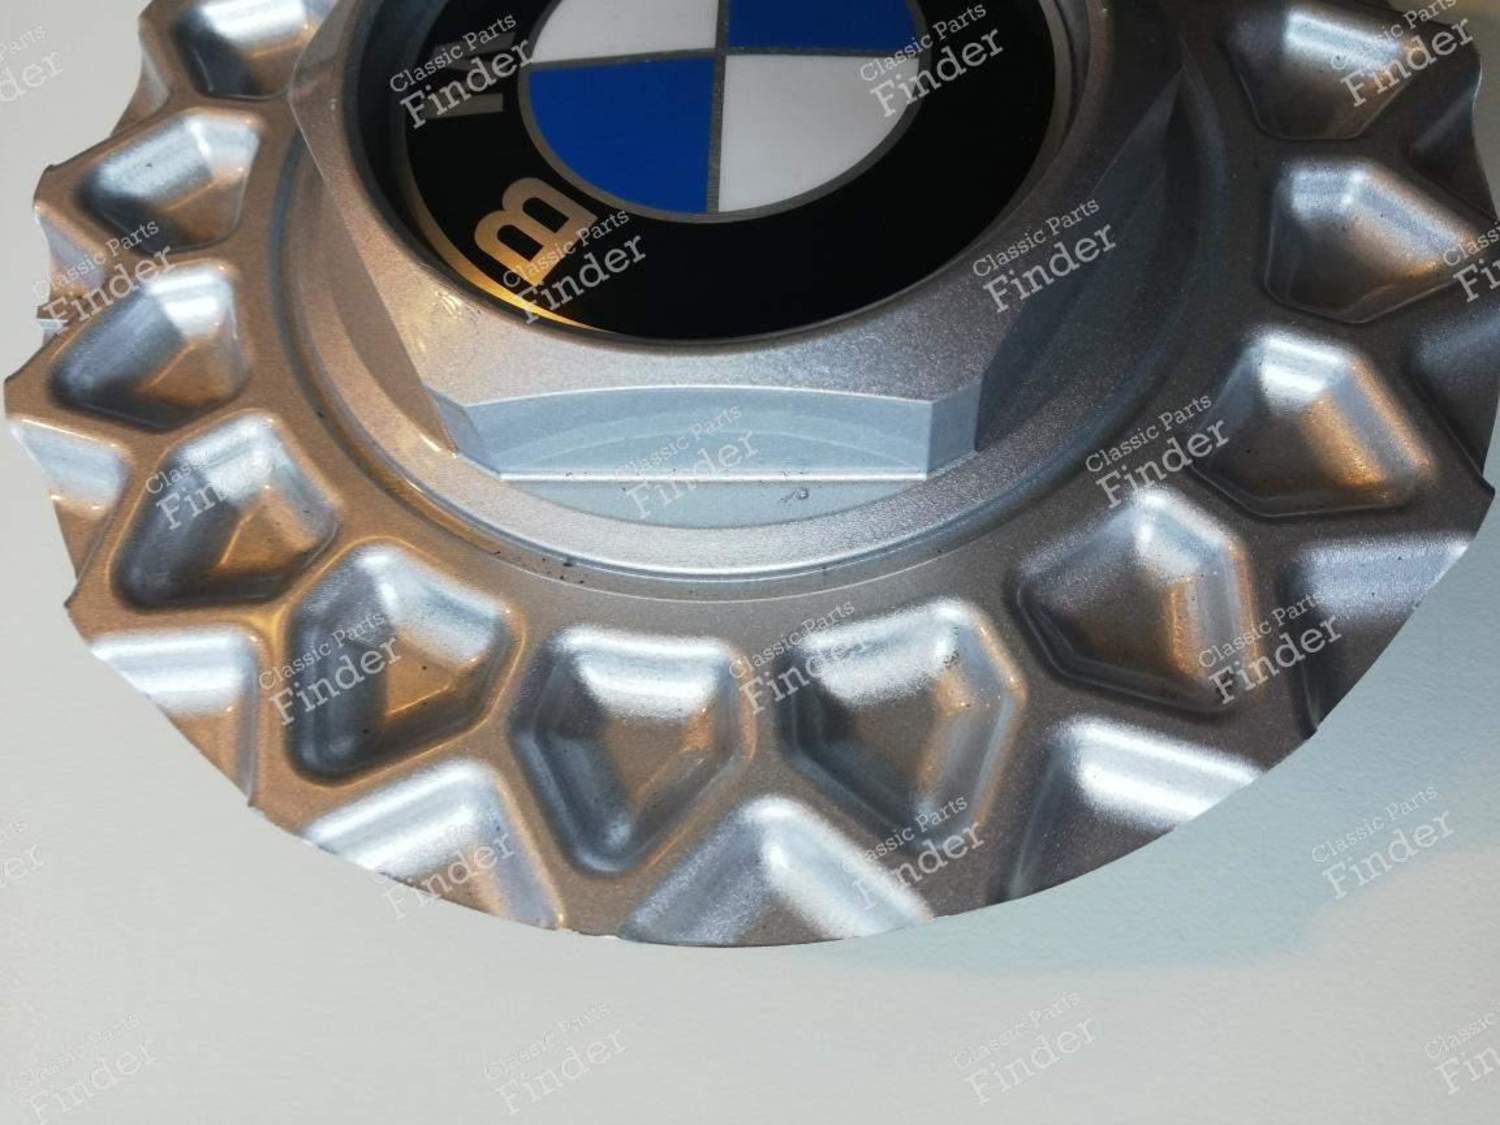 Cache-moyeu pour BMW Série 3 E30